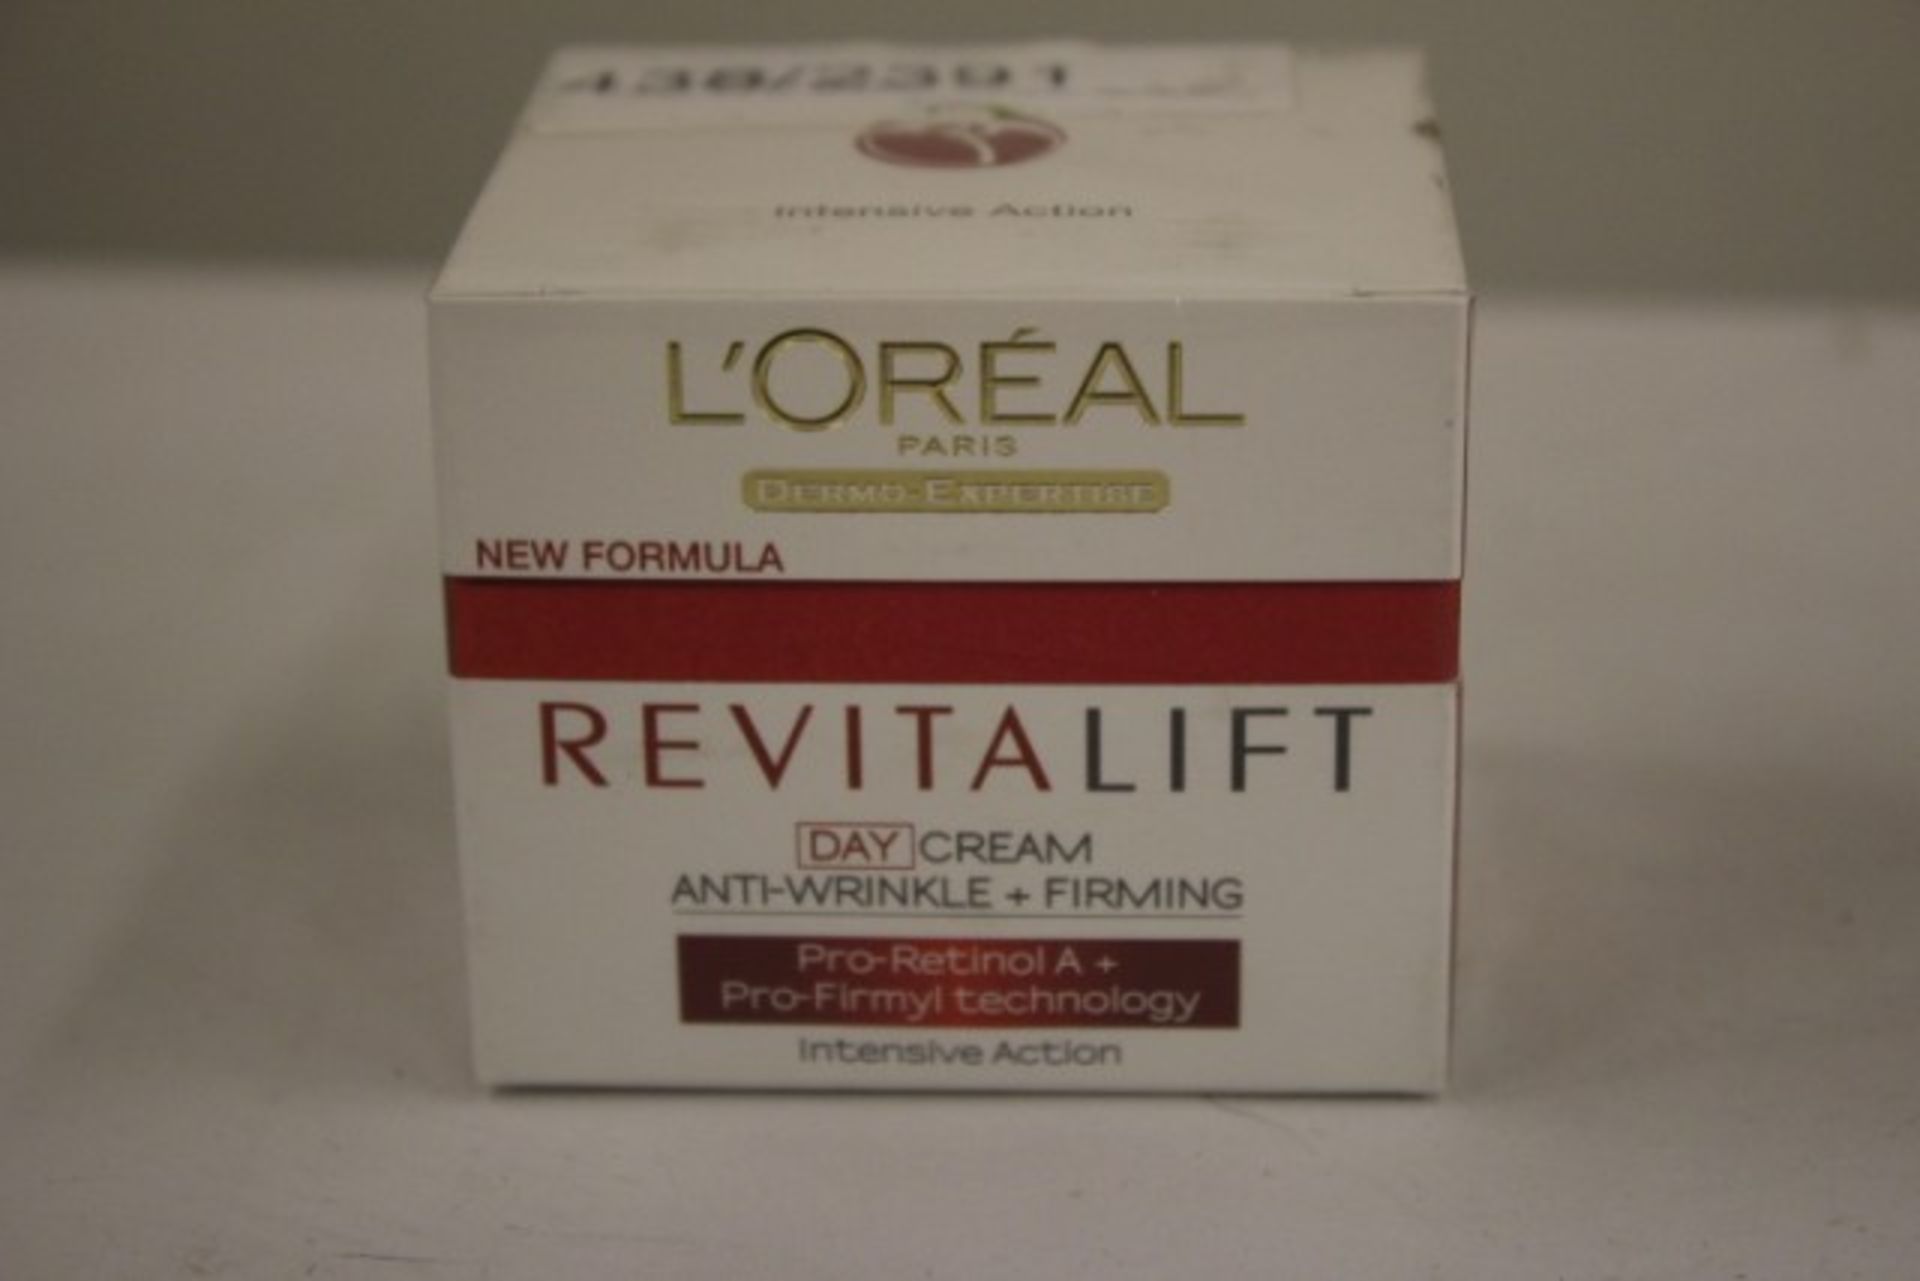 V Brand New L'Oreal Dermo-Expertise Revitalift Anti-Wrinkle + Firming Day Cream 50ml ISP £11.00 (